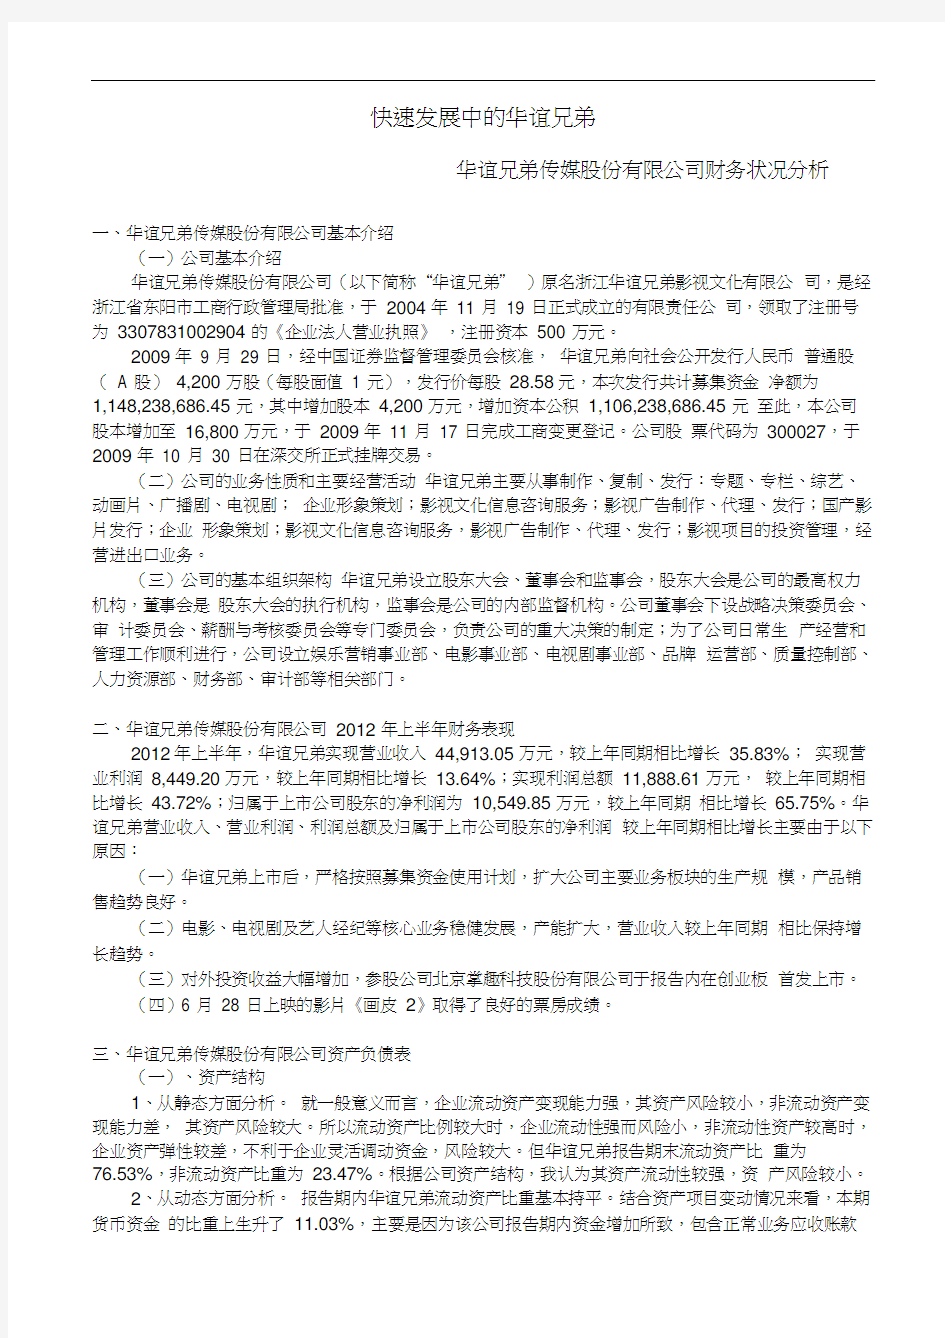 华谊兄弟传媒股份有限公司财务状况分析